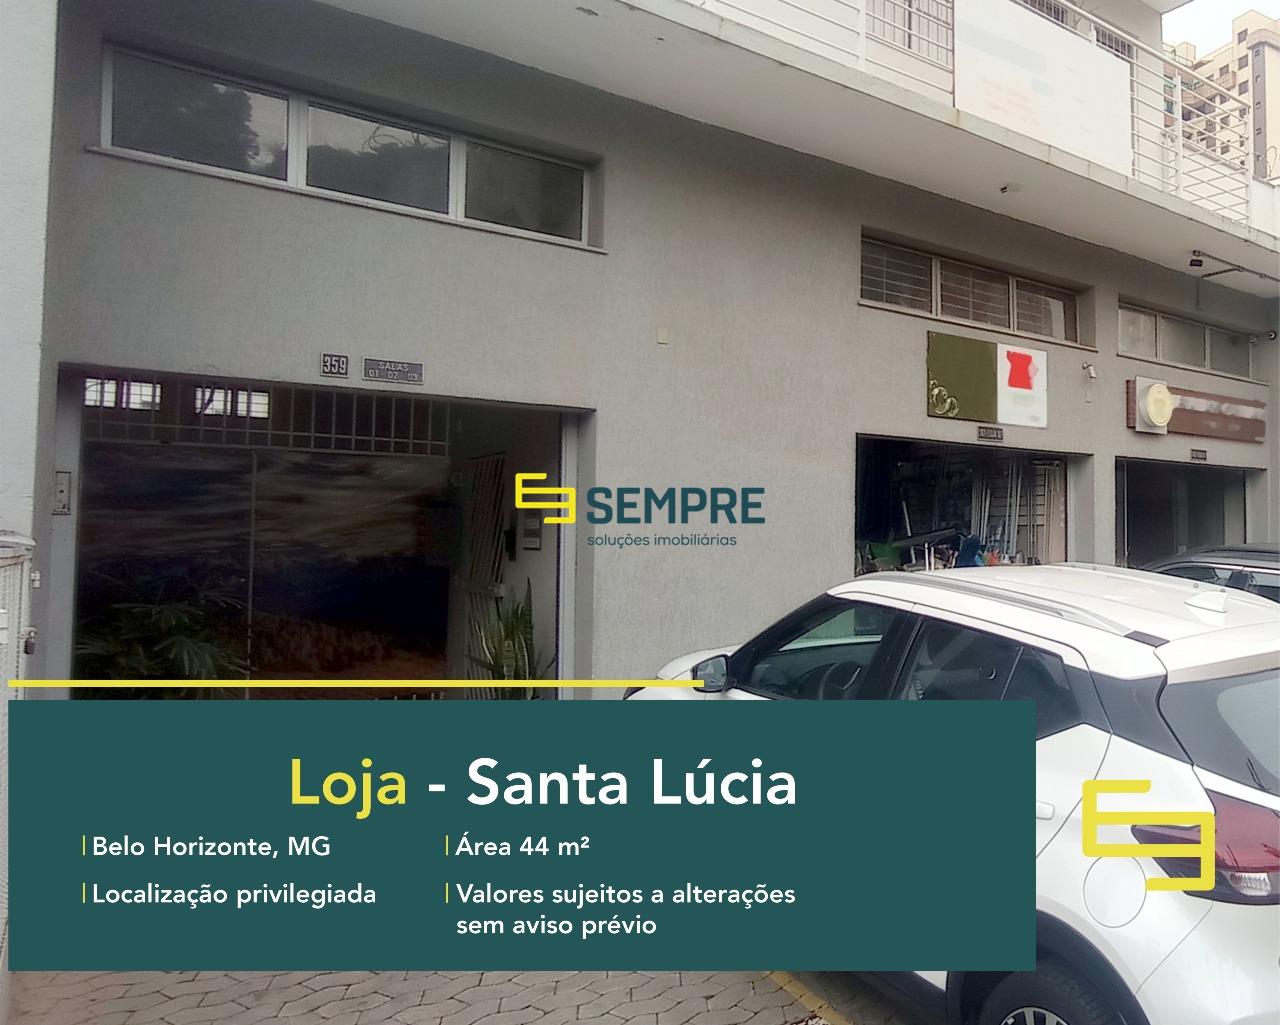 Loja para locação no Santa Lúcia em Belo Horizonte, em excelente localização. O estabelecimento comercial conta com área de 44 m².